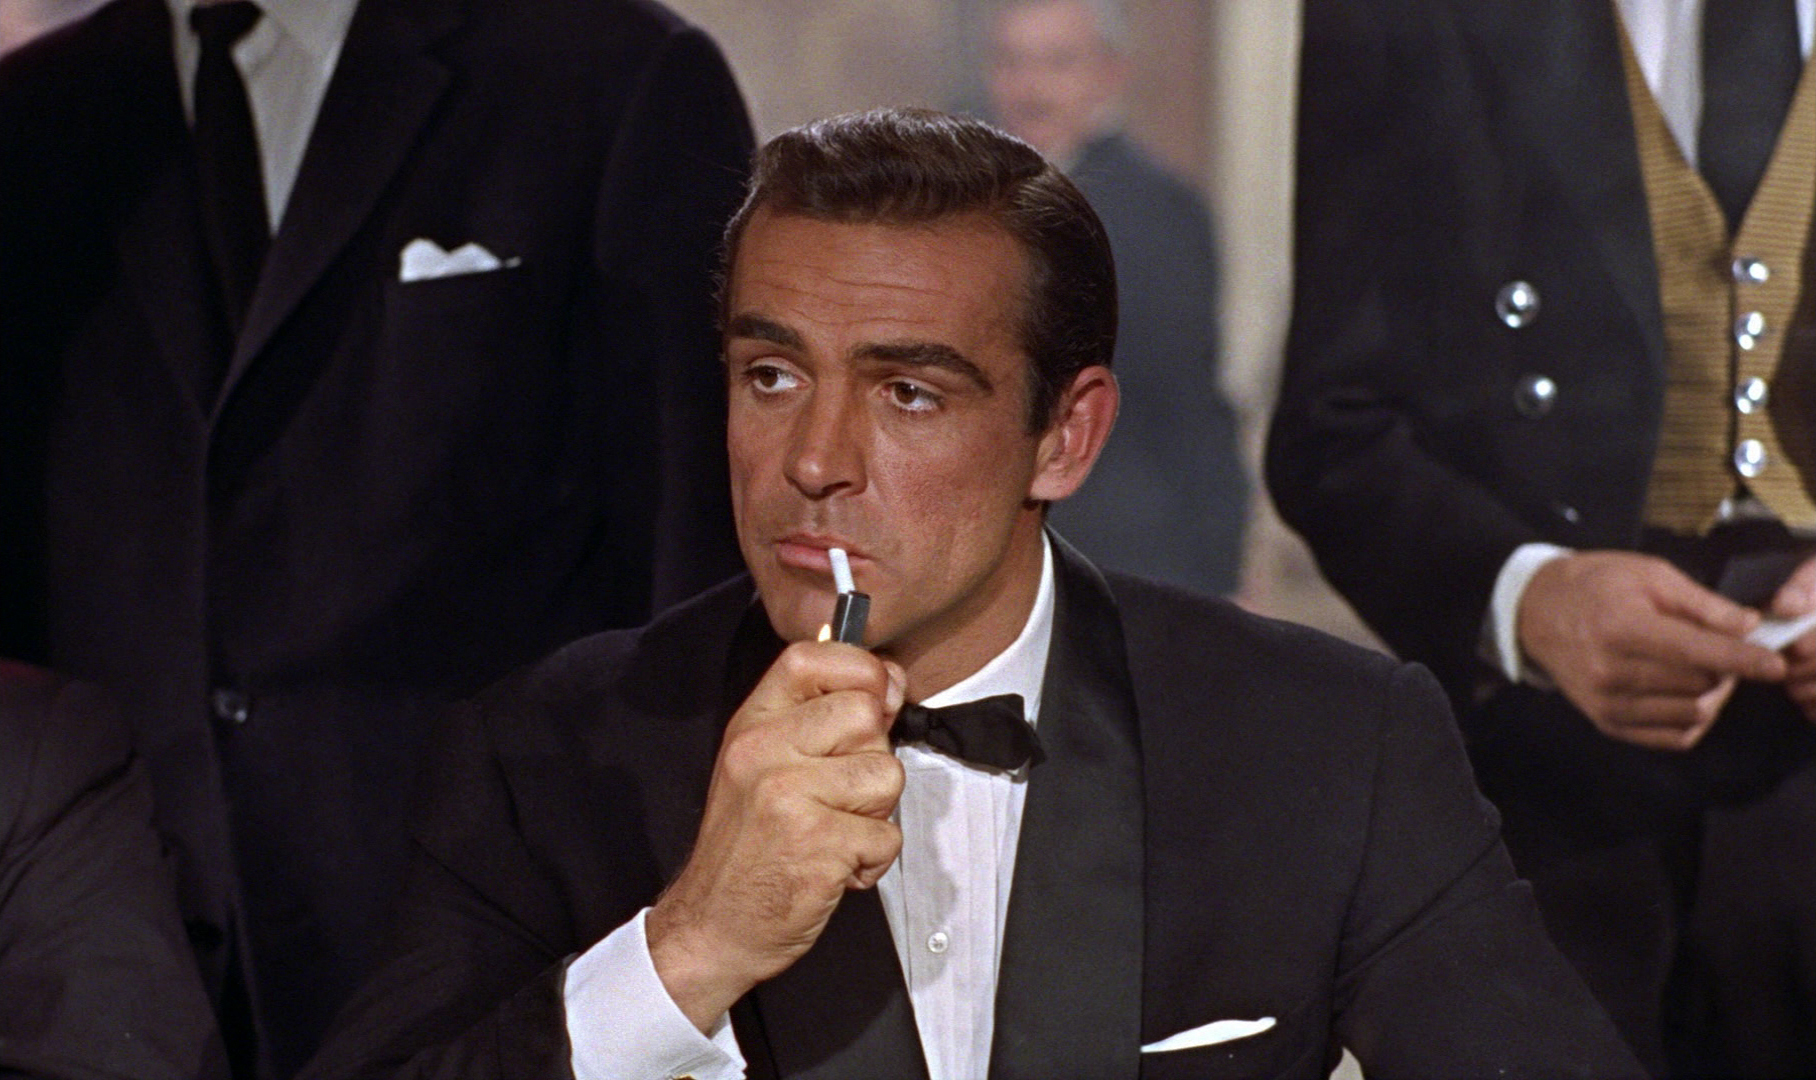 James Bond y el tabaquismo pasivo